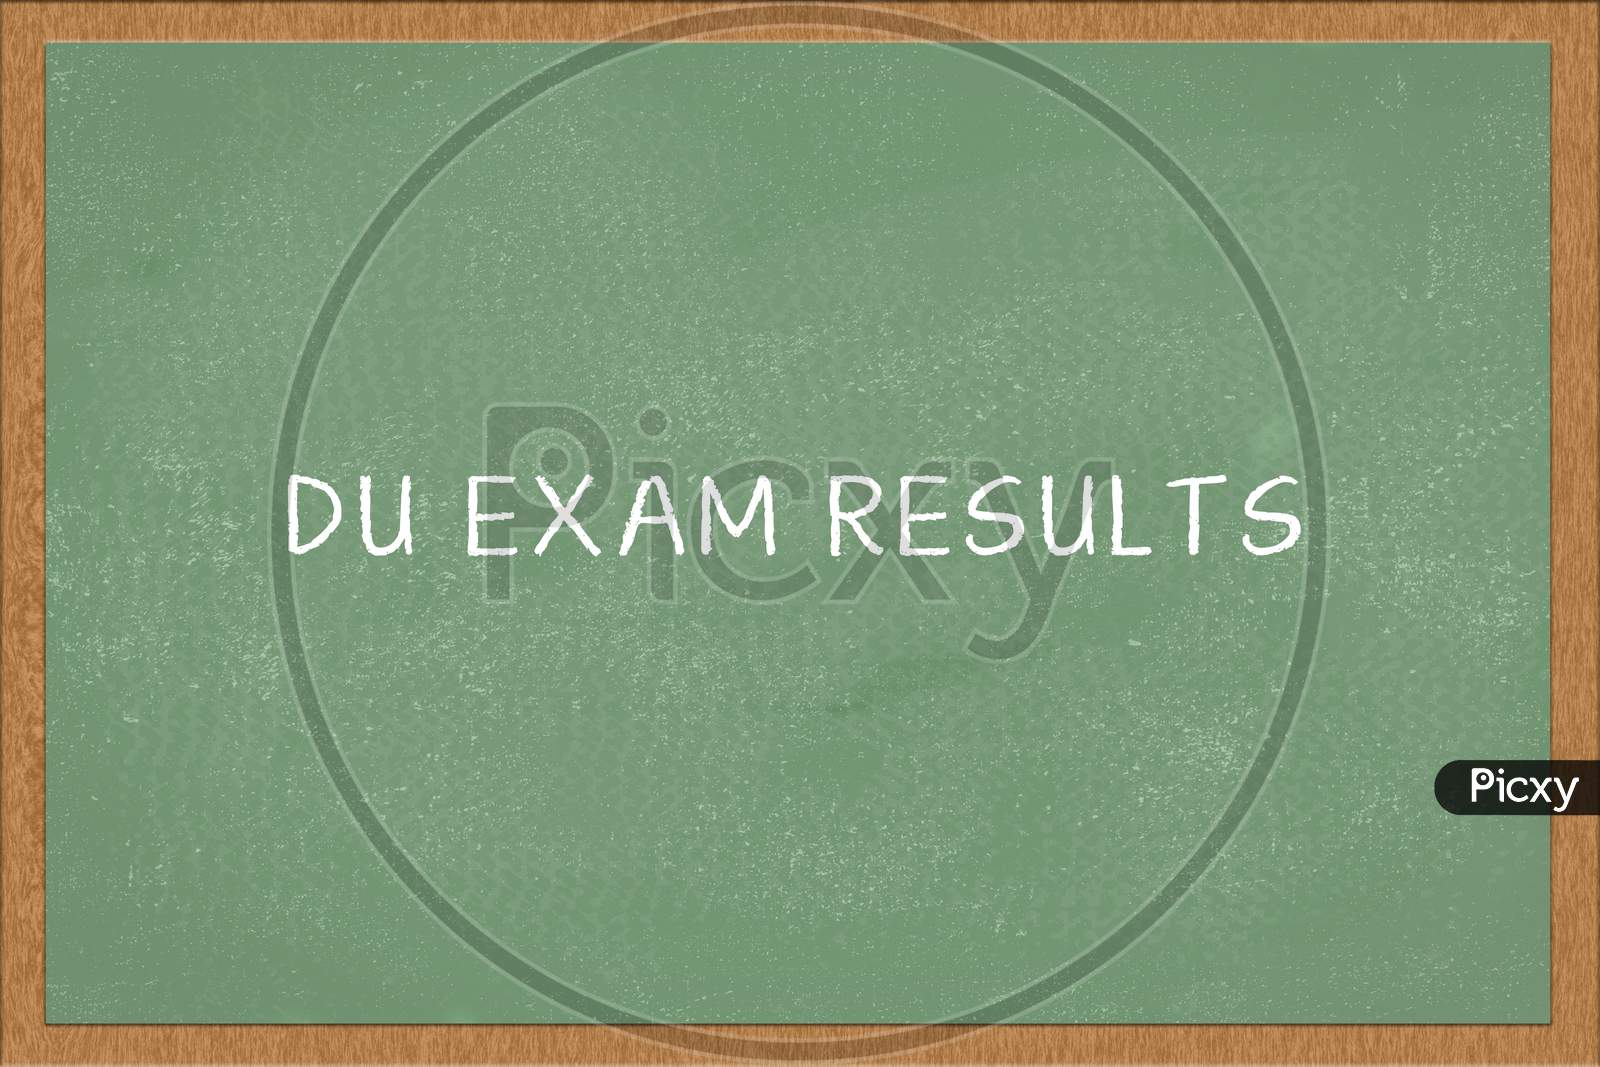 Du Exam Results Written On Green Chalkboard.